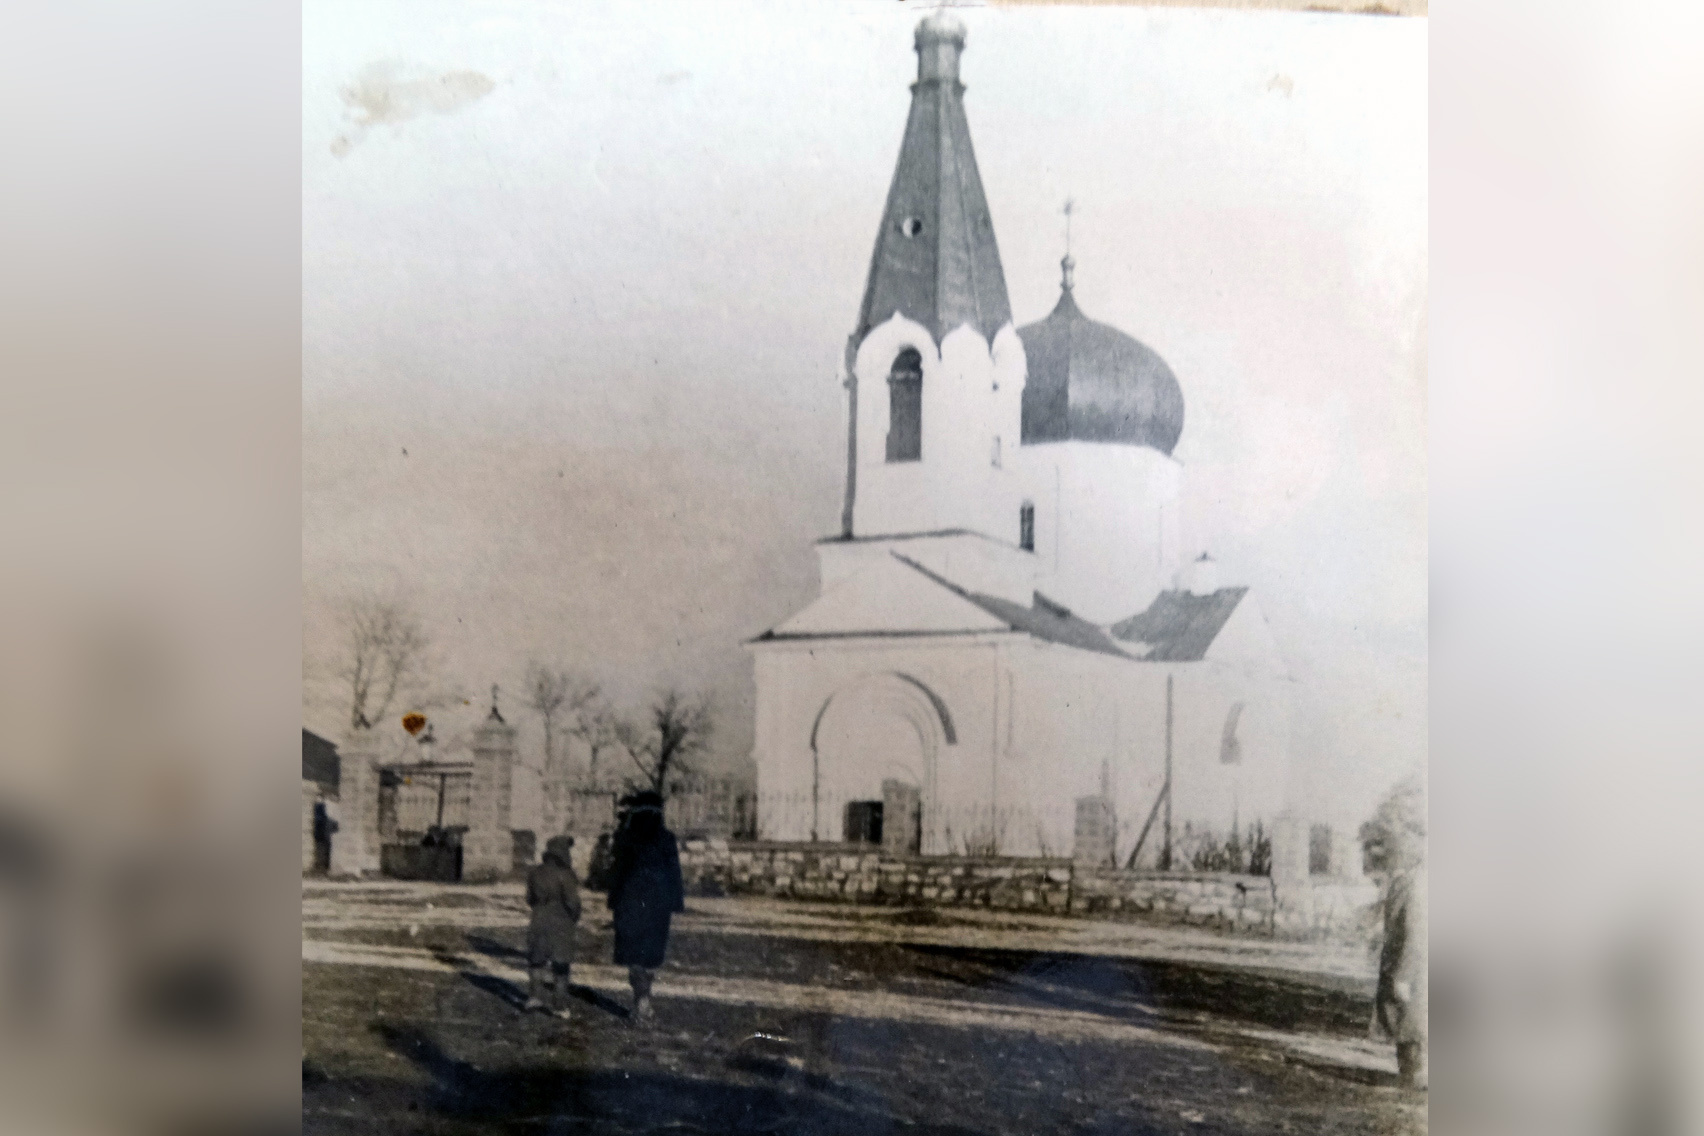 Семёновская церковь в 1945 году — меньше современного собора, но гораздо изящнее, по мнению краеведов и историков